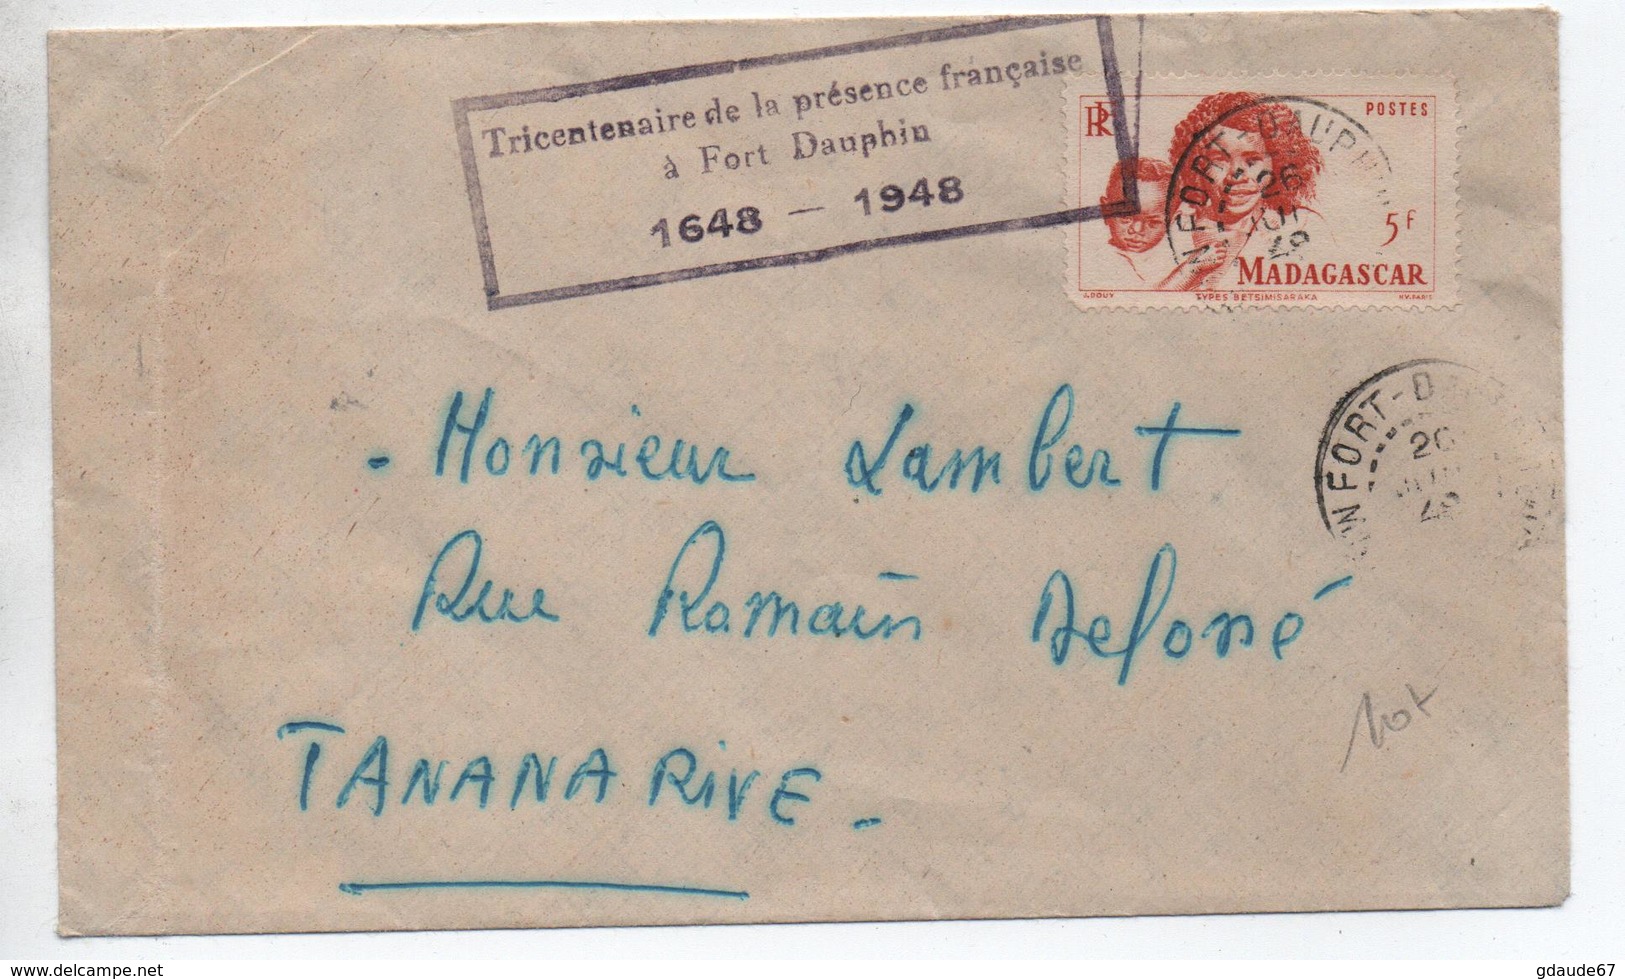 1948 - ENVELOPPE De FORT DAUPHIN (MADAGASCAR) Avec CACHET "TRICENTENAIRE DE LA PRESENCE FRANCAISE A FORT DAUPHIN 1648" - Briefe U. Dokumente